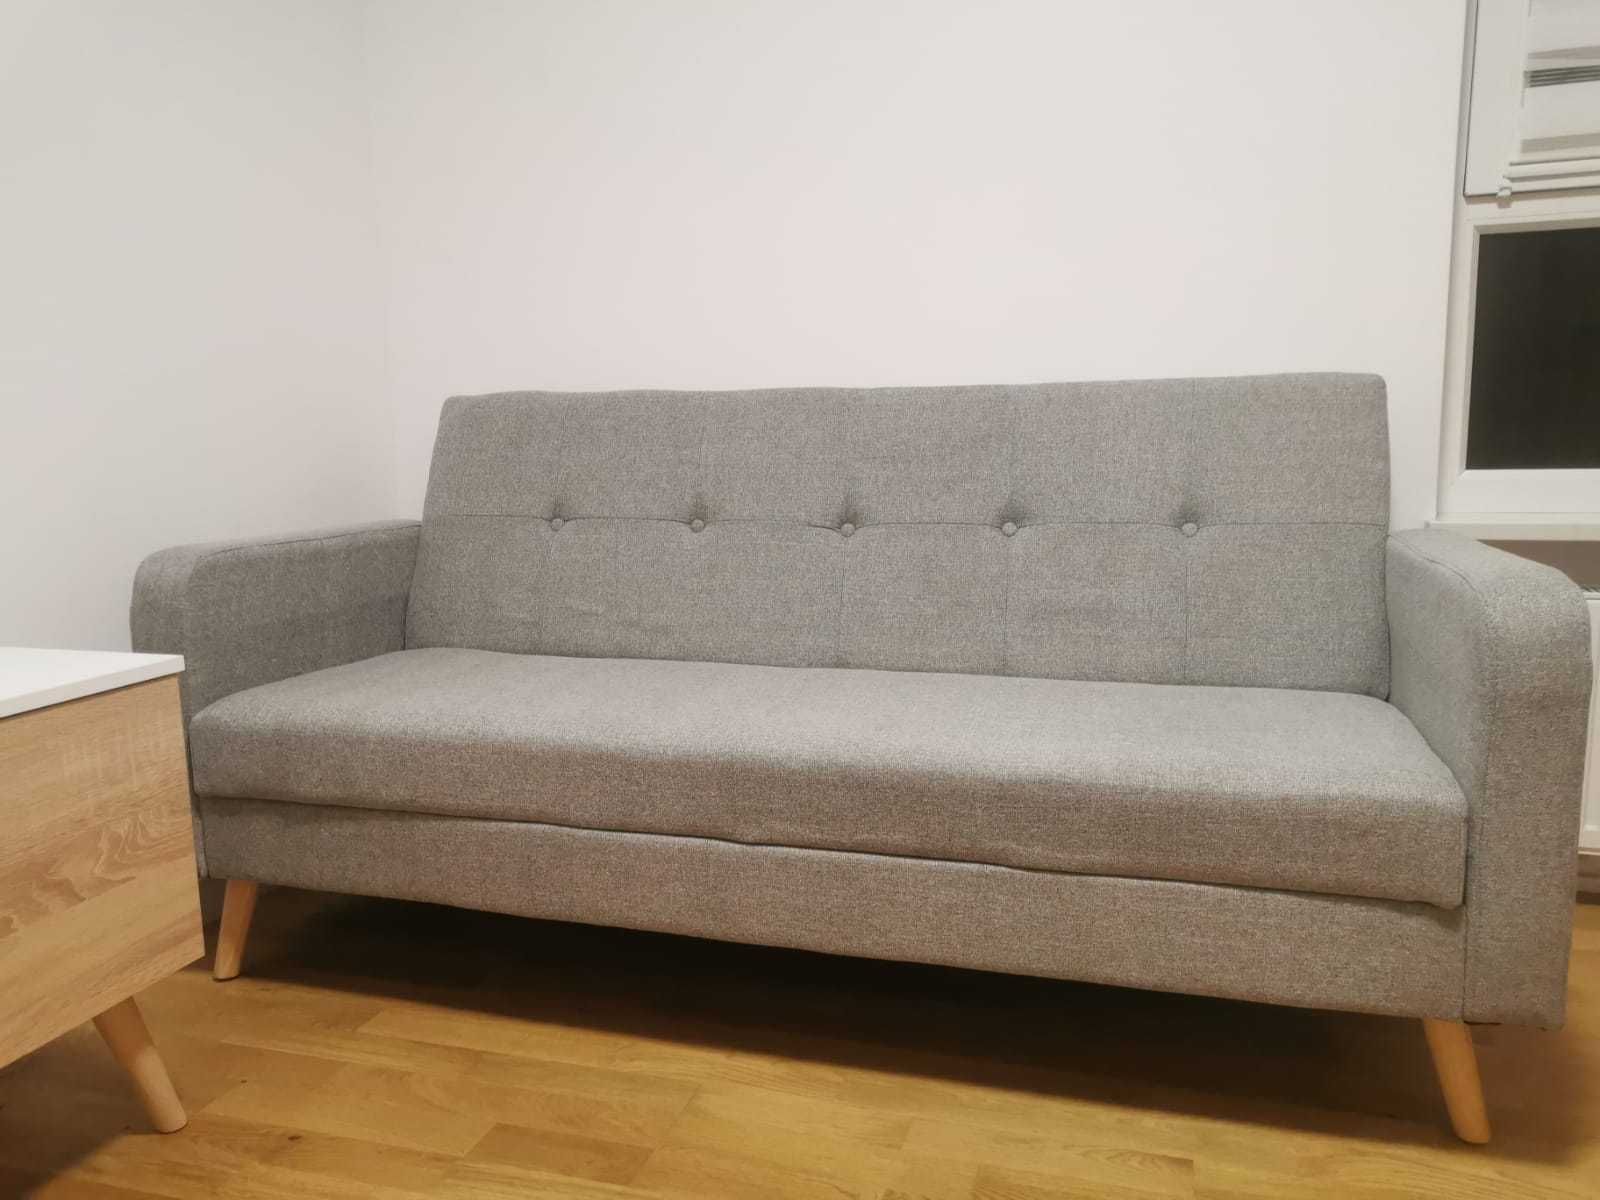 Sofa rozkładana, nieużywana, stan idealny